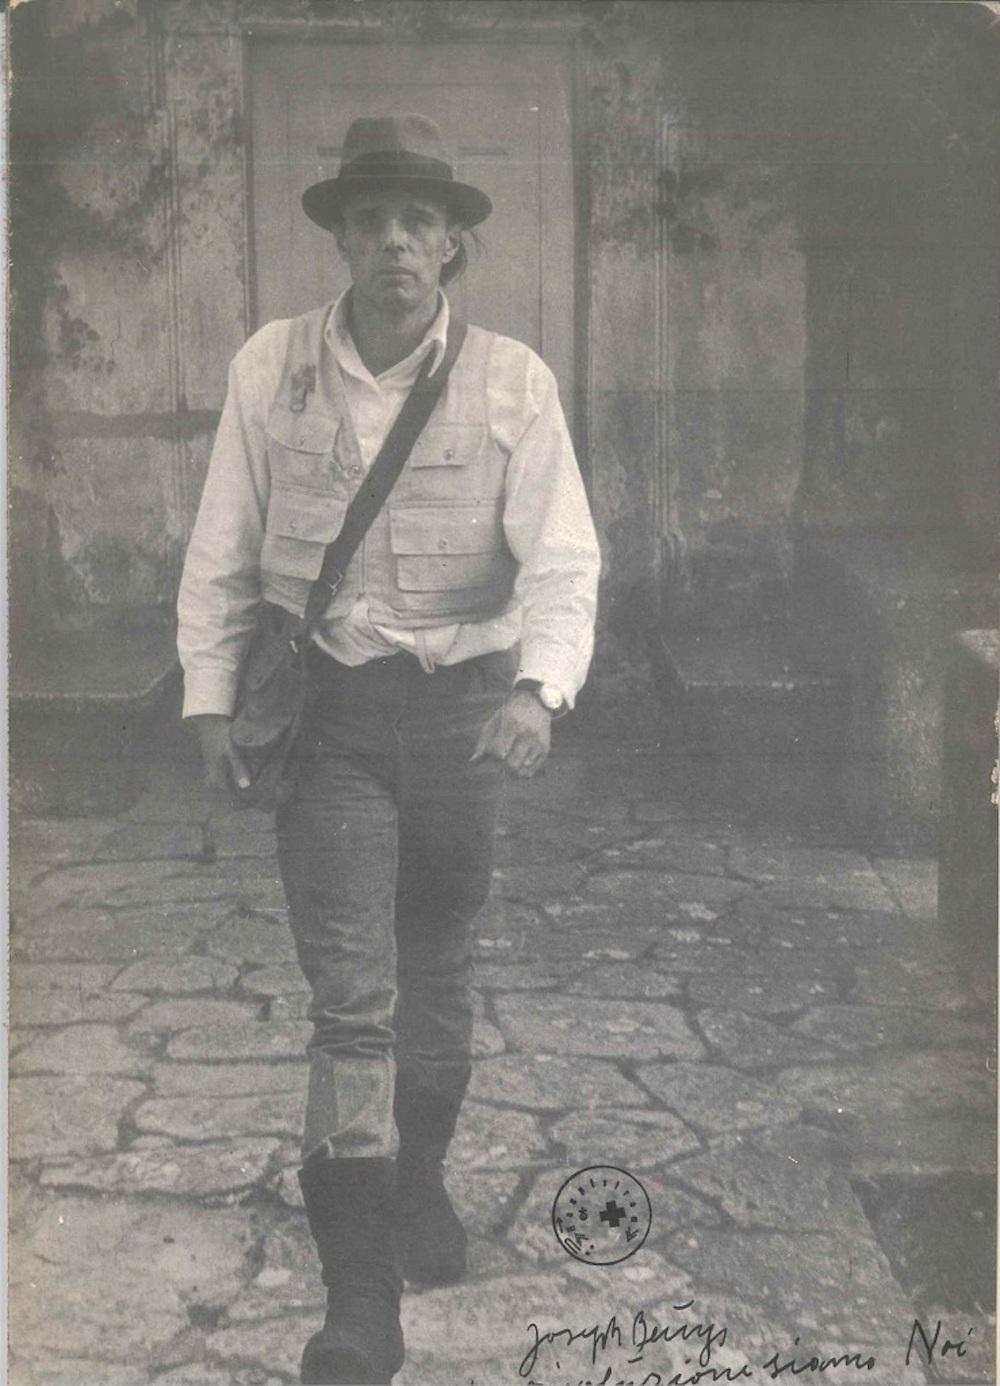 Original Title: Partitura di Joseph Beuys: la rivoluzione siamo noi = A score by Joseph Beuys: we are the revolution. 
Book-Interview by Achille Bonito Oliva.

In-4º, bilingual text but mostly in Italian, pp. 31, cm 31 x 0.5 x 21.5, 1971. Published